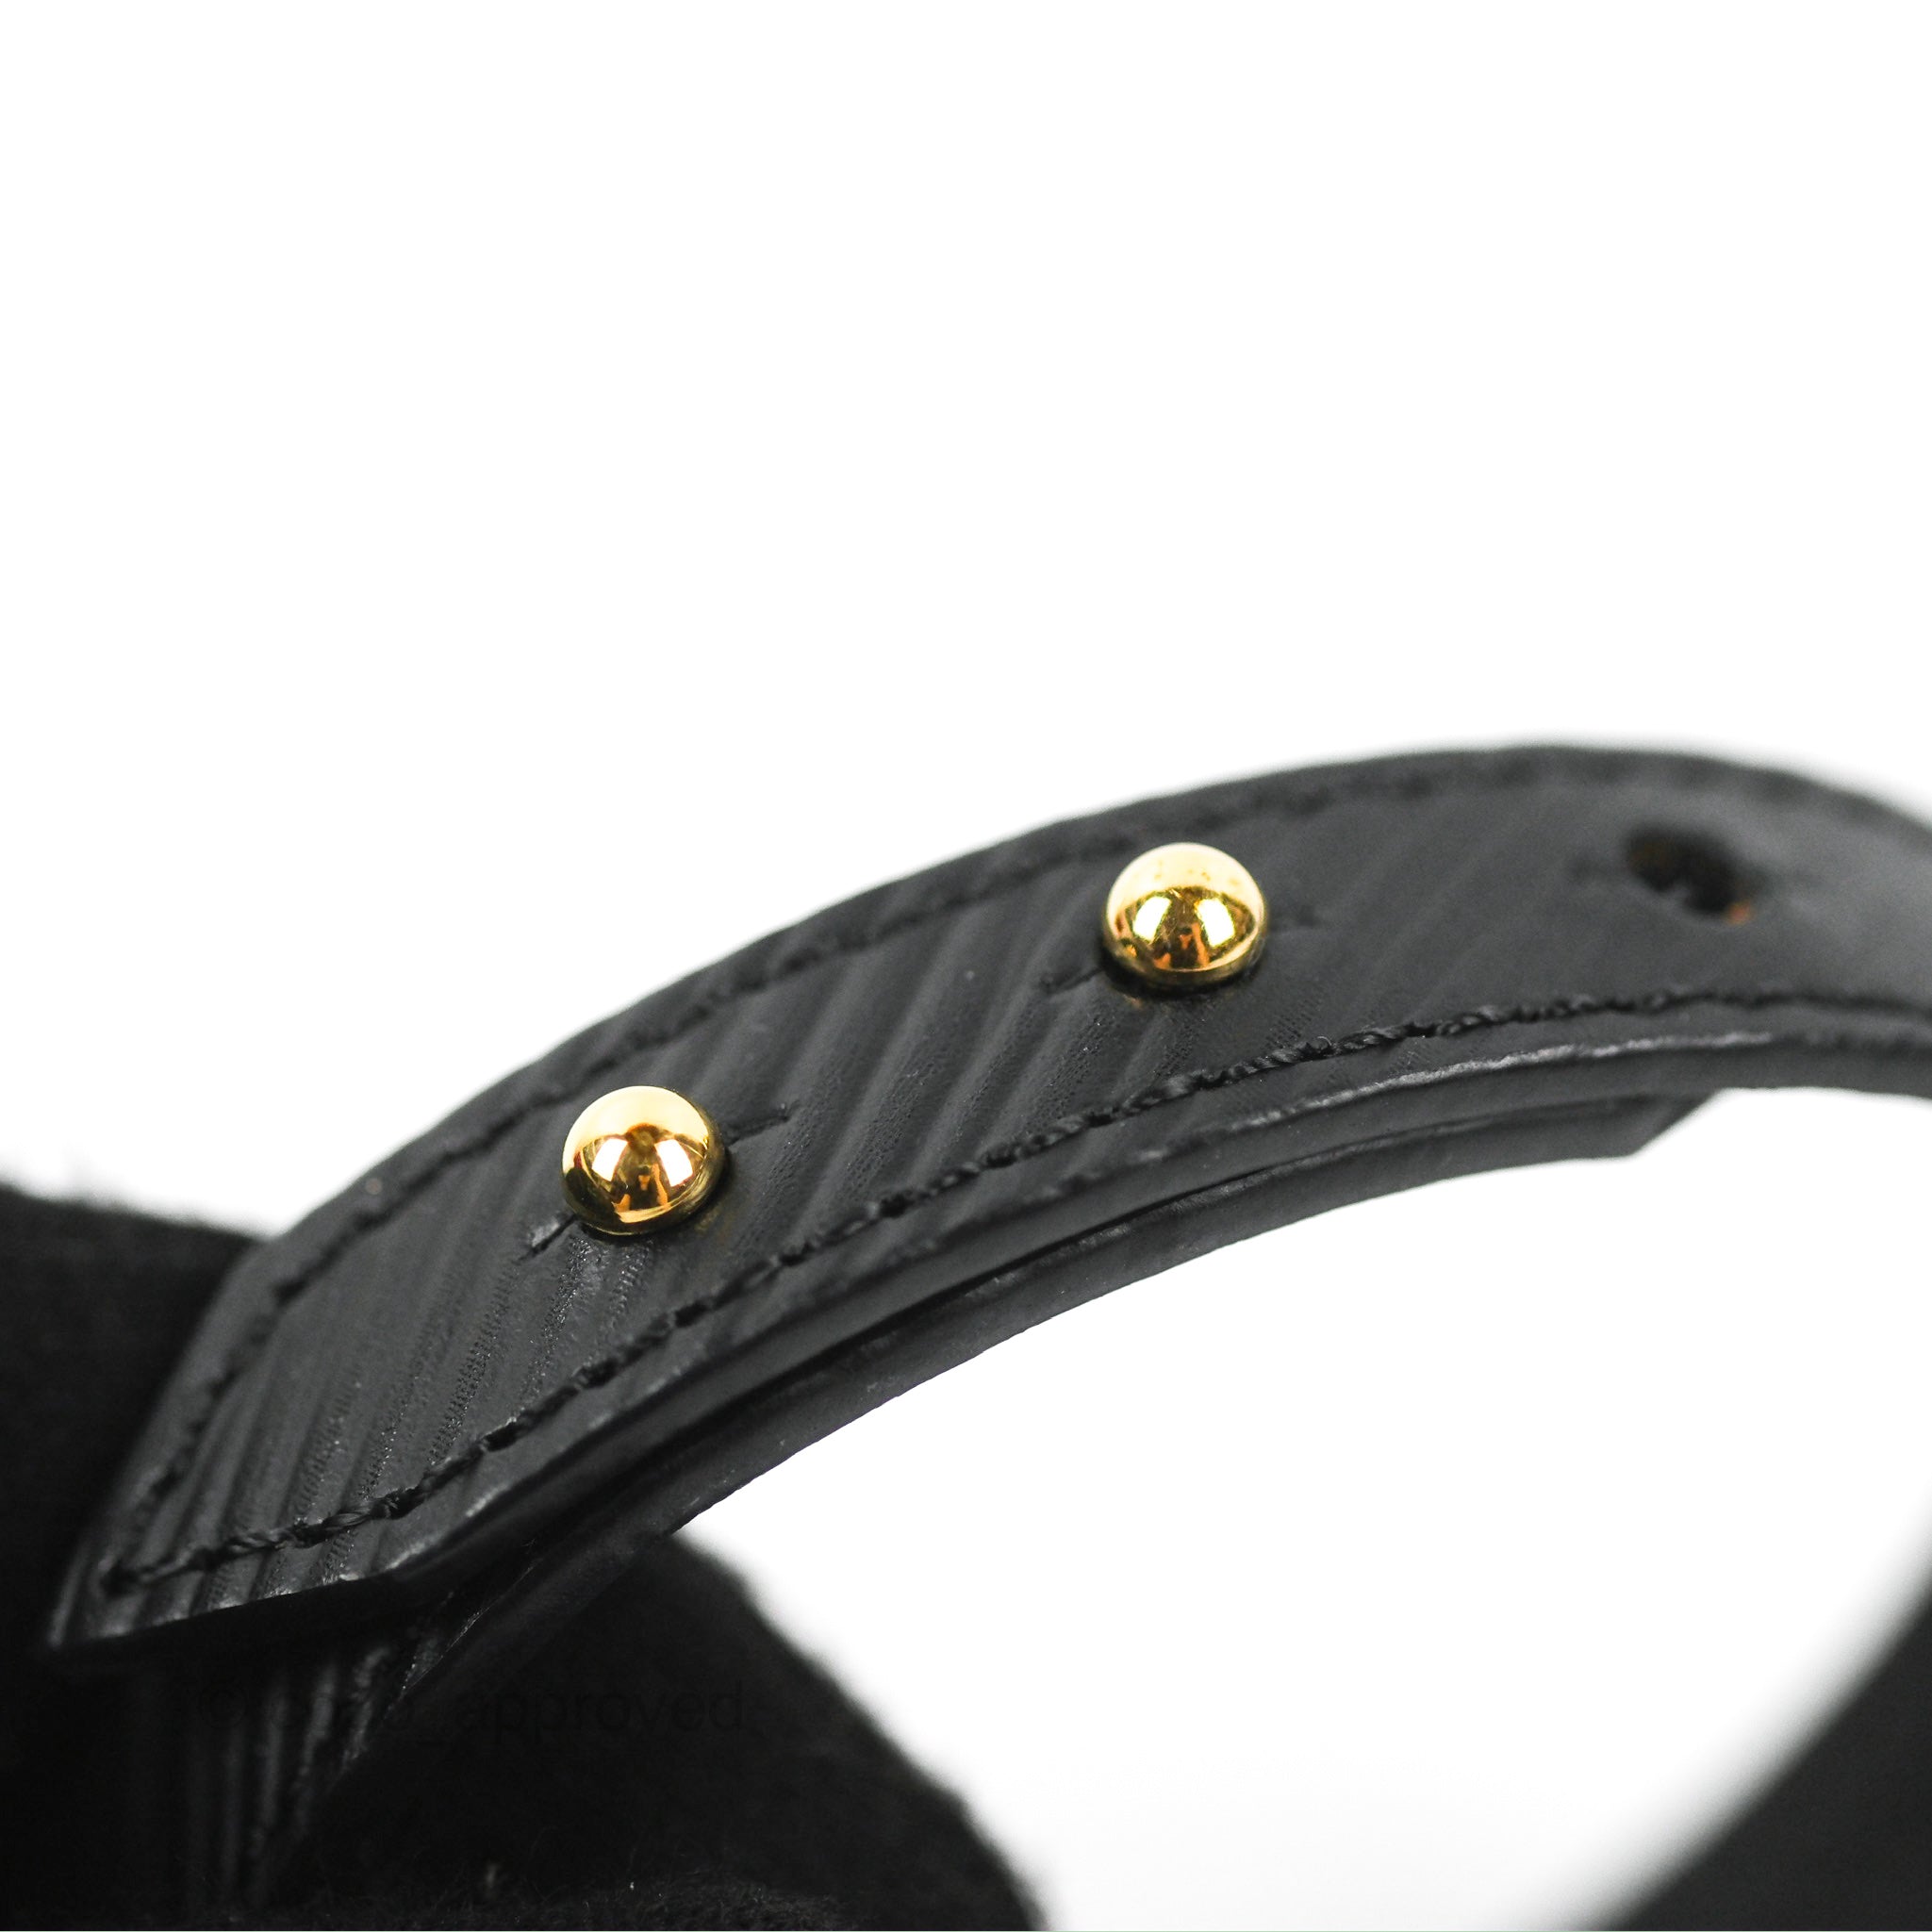 Louis Vuitton Twist Bracelet Black – Coco Approved Studio